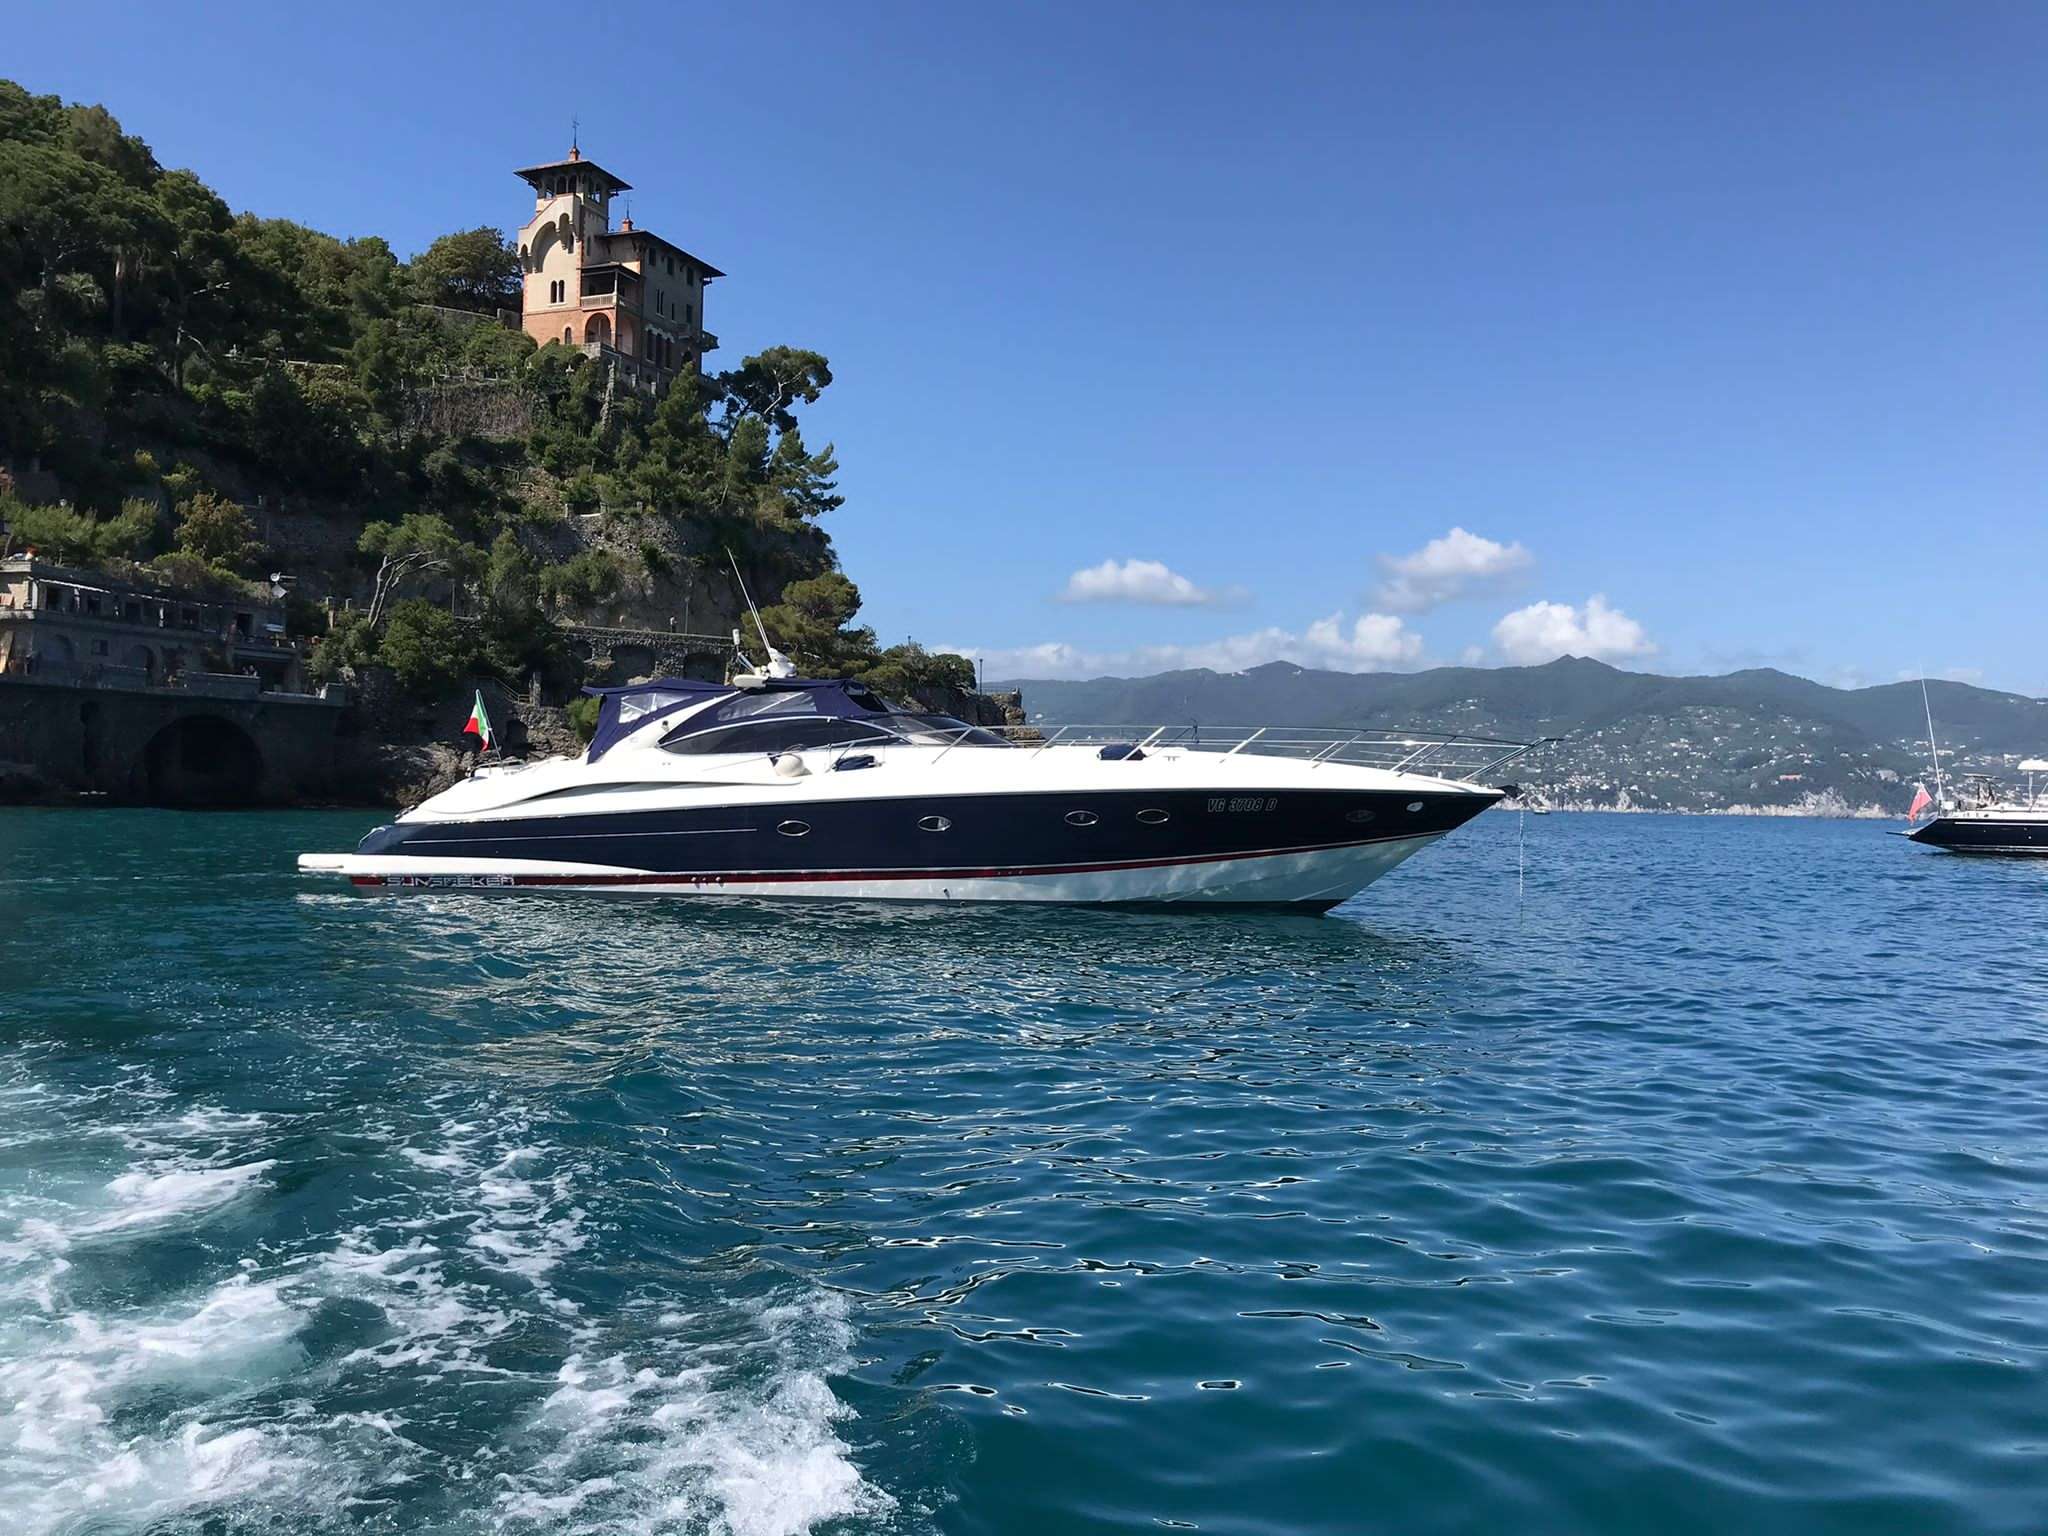 Magic Sun Sunseeker 60S - Catamaran Charter France & Boat hire in Fr. Riviera, Corsica & Sardinia 2